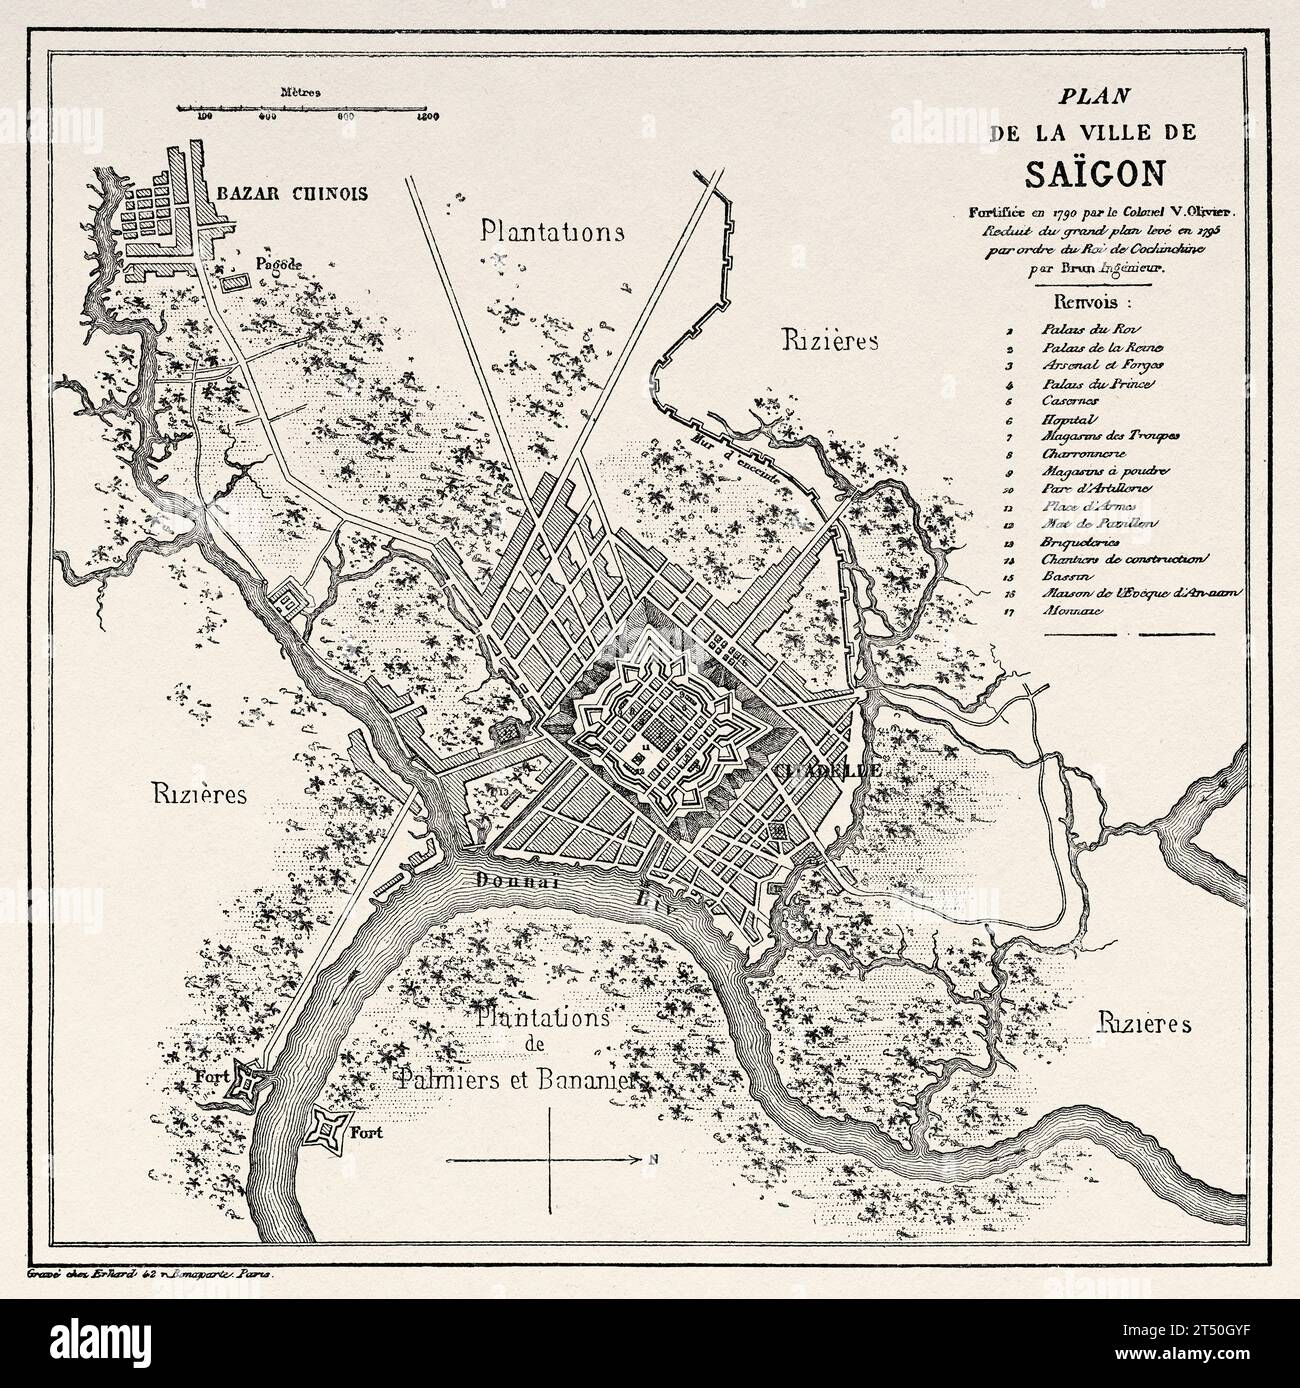 Ancienne carte de la ville de Saigon. Vietnam. Indochine. Gravure ancienne du 19e siècle du Tour du monde 1860 Banque D'Images